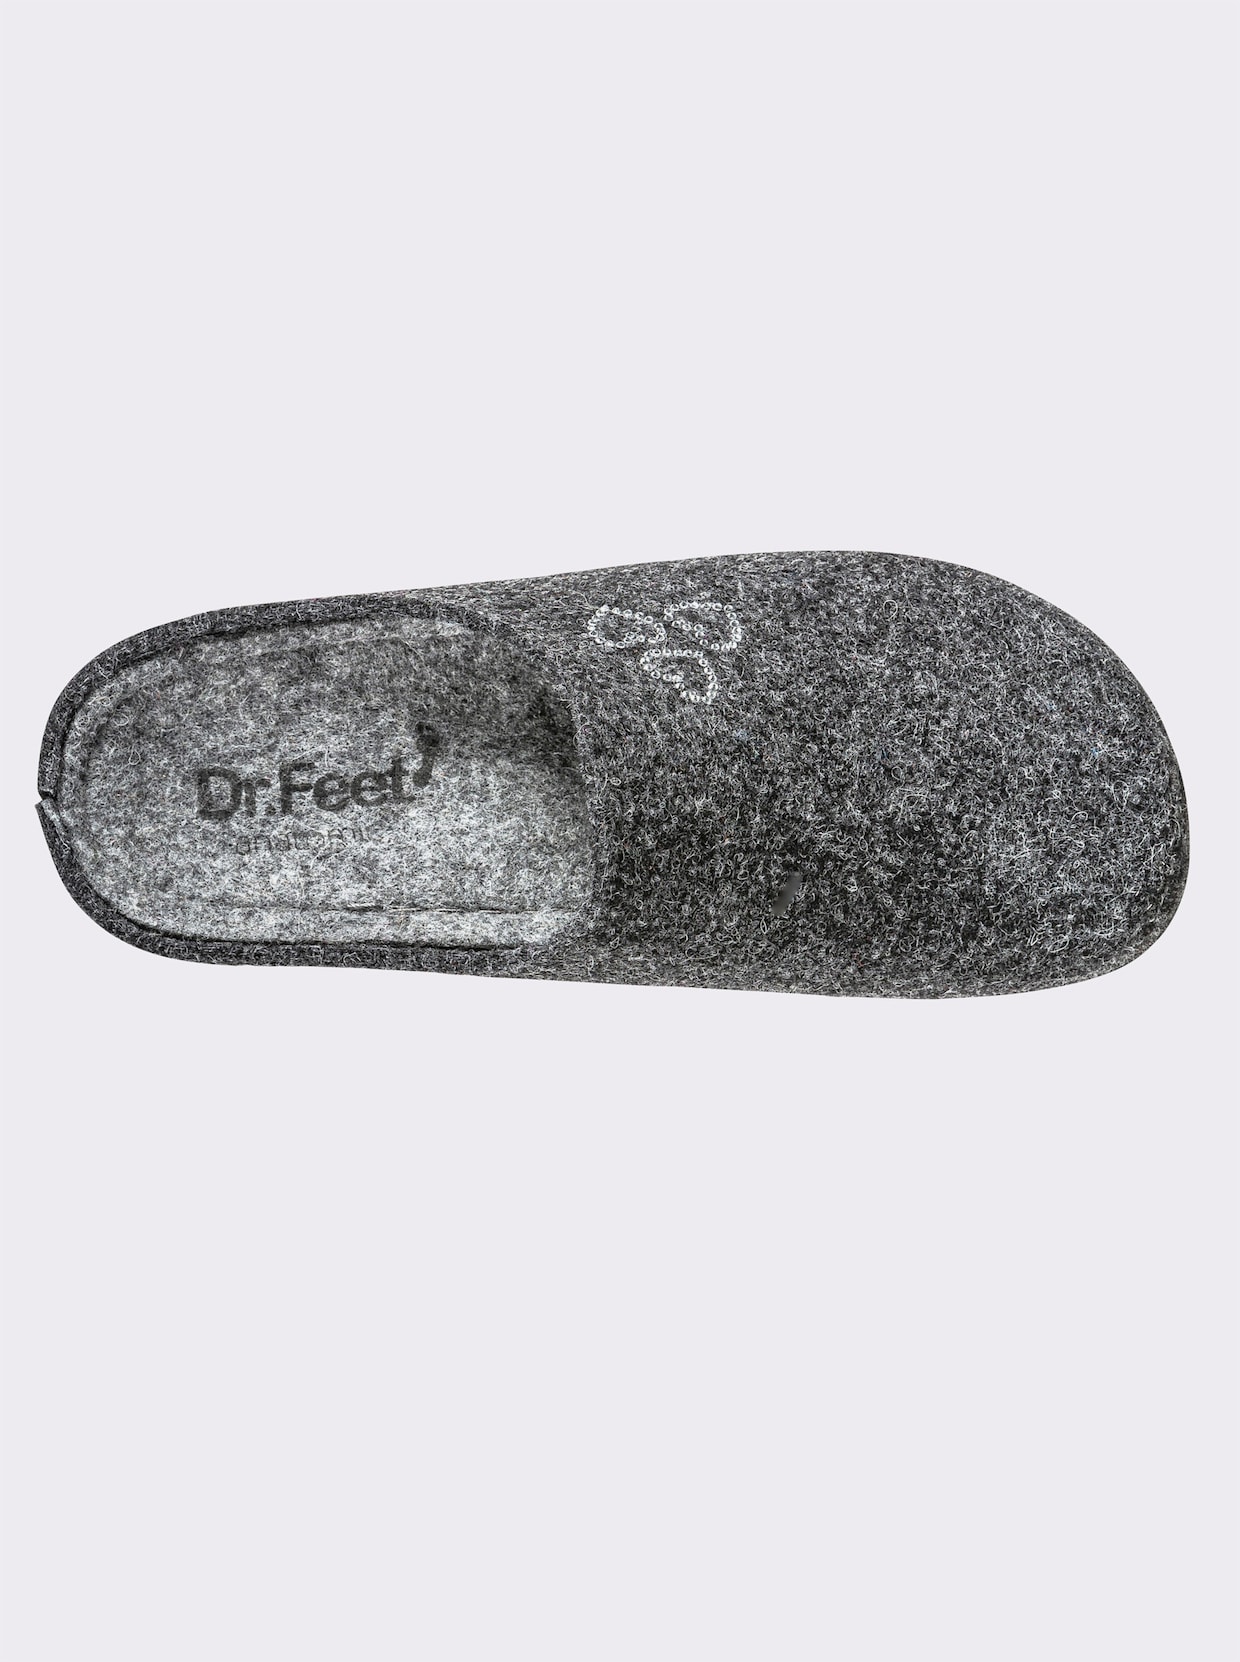 Dr. Feet Hausschuh - anthrazit